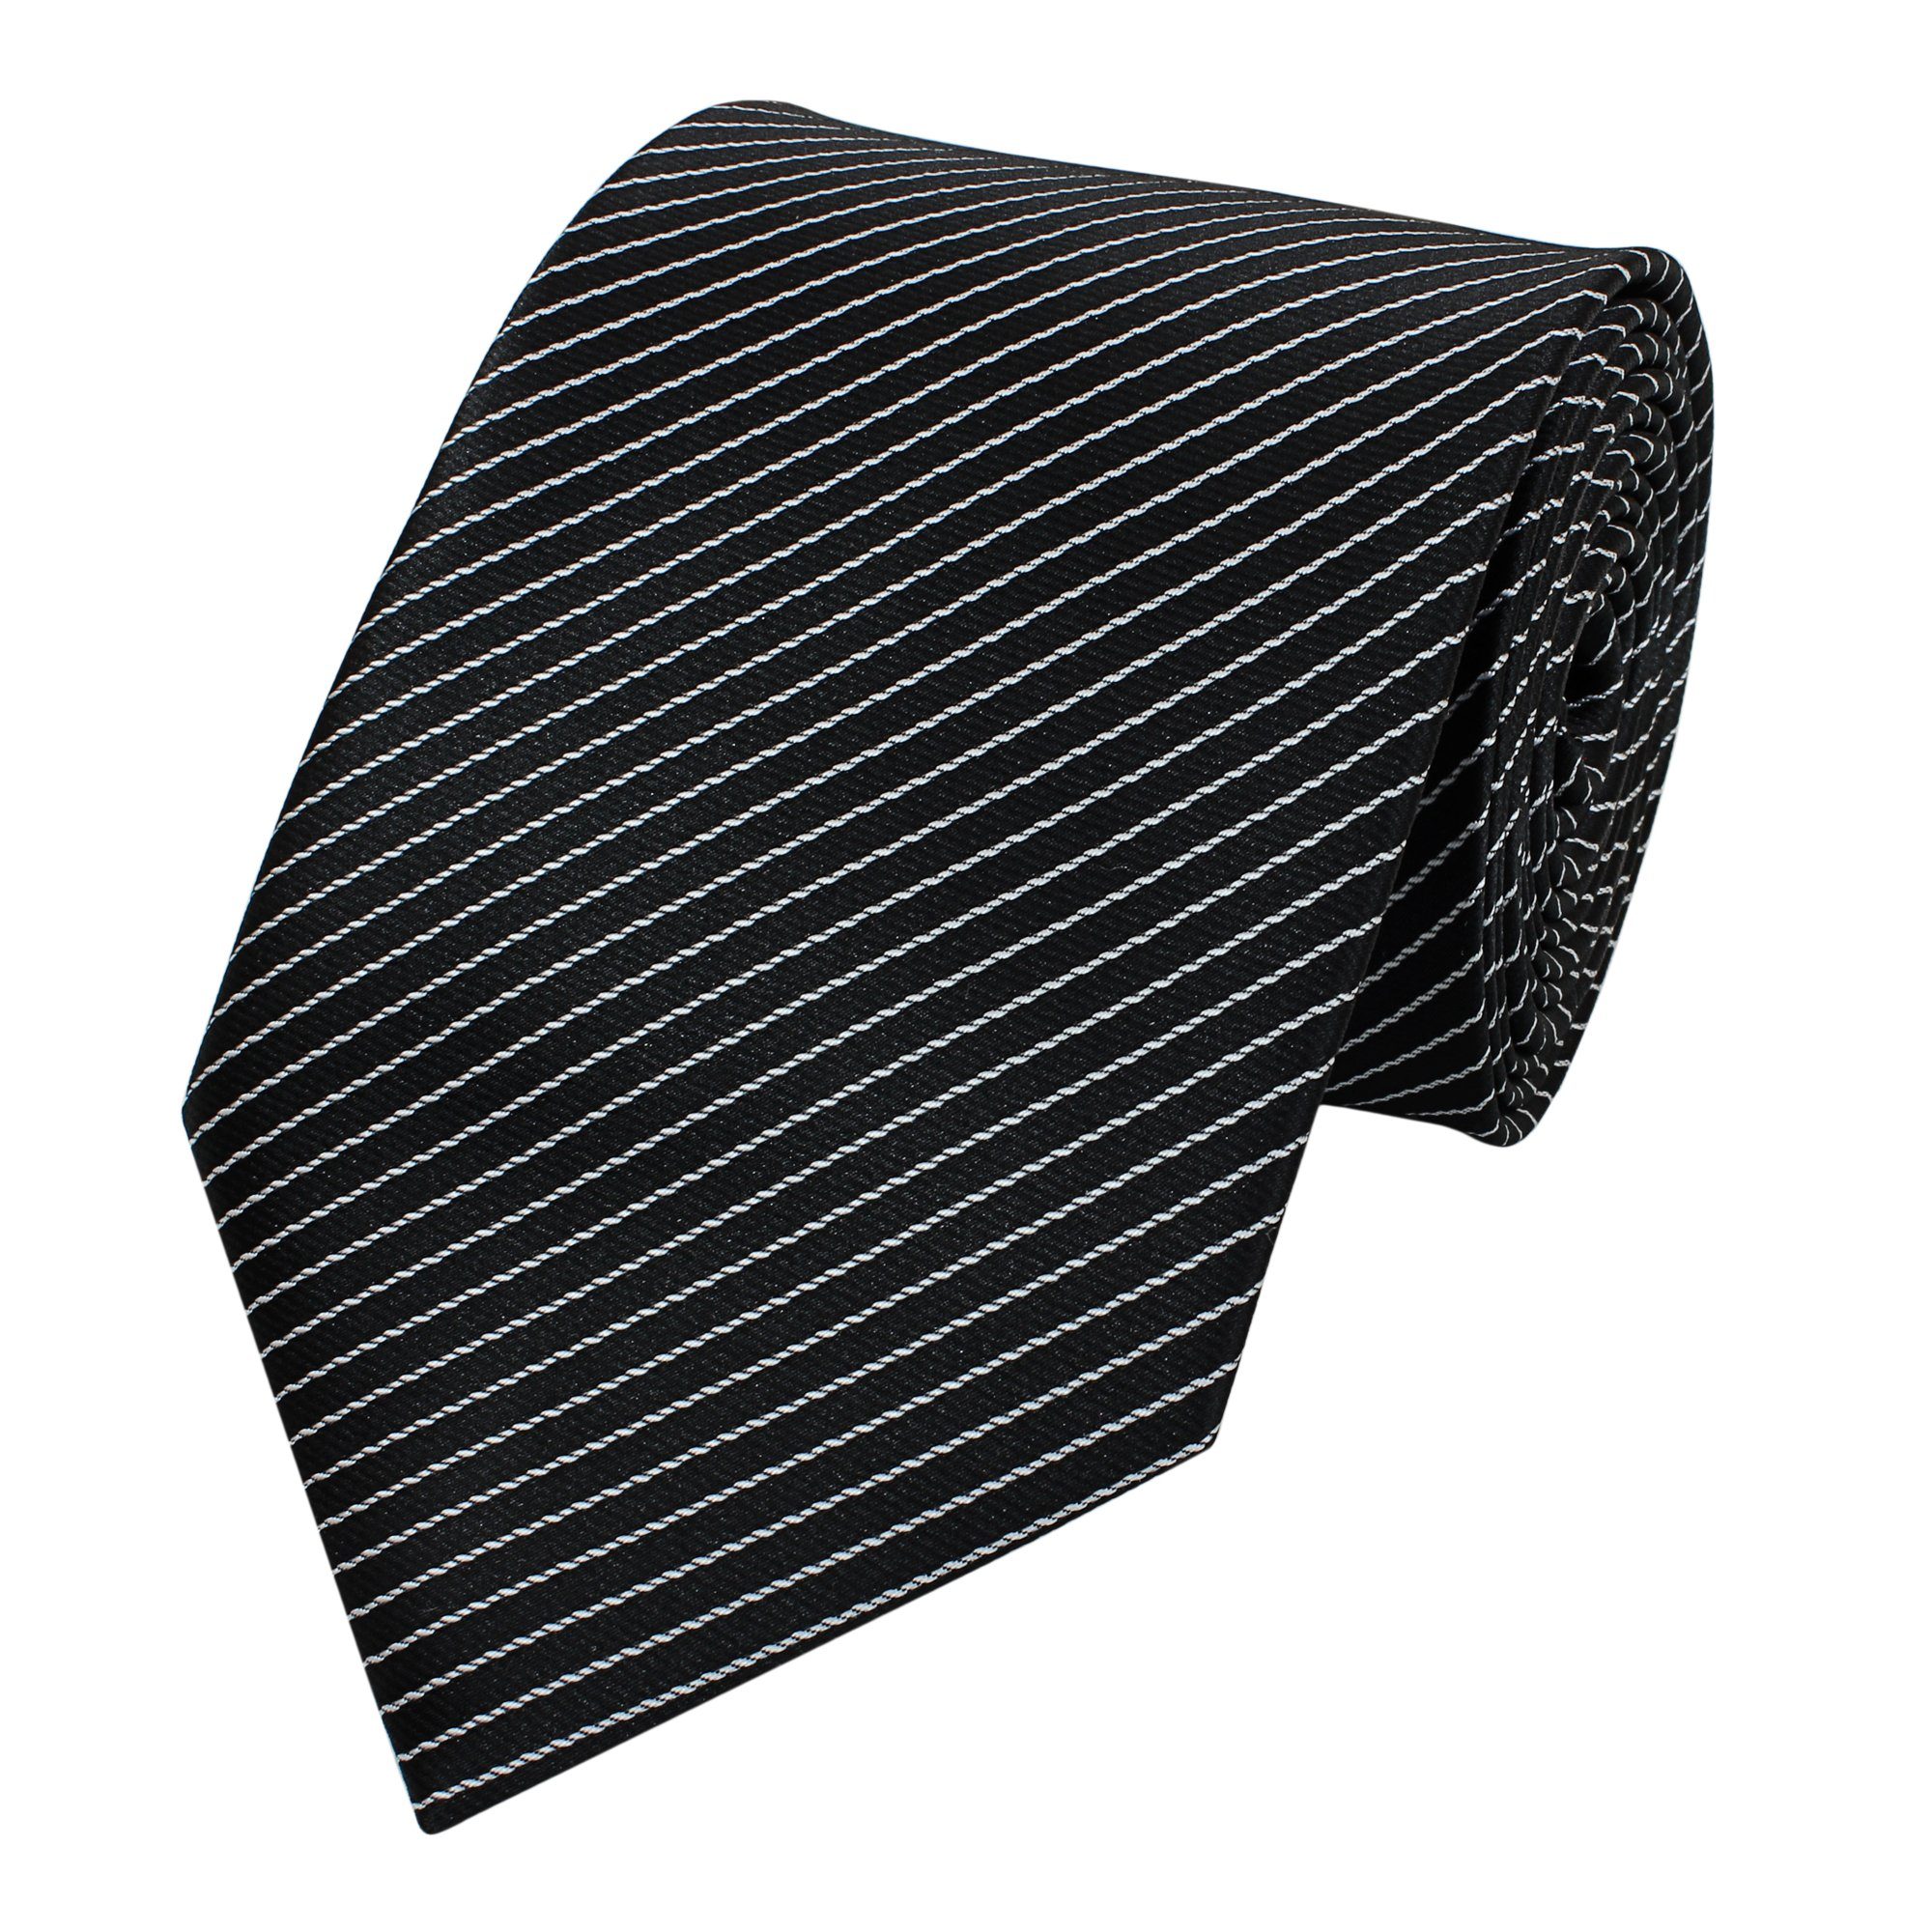 Fabio Farini Krawatte gestreifte Herren Krawatte - Tie mit Streifen in 6cm oder 8cm Breite (ohne Box, Gestreift) Schmal (6cm), Schwarz/feine weiße Streifen